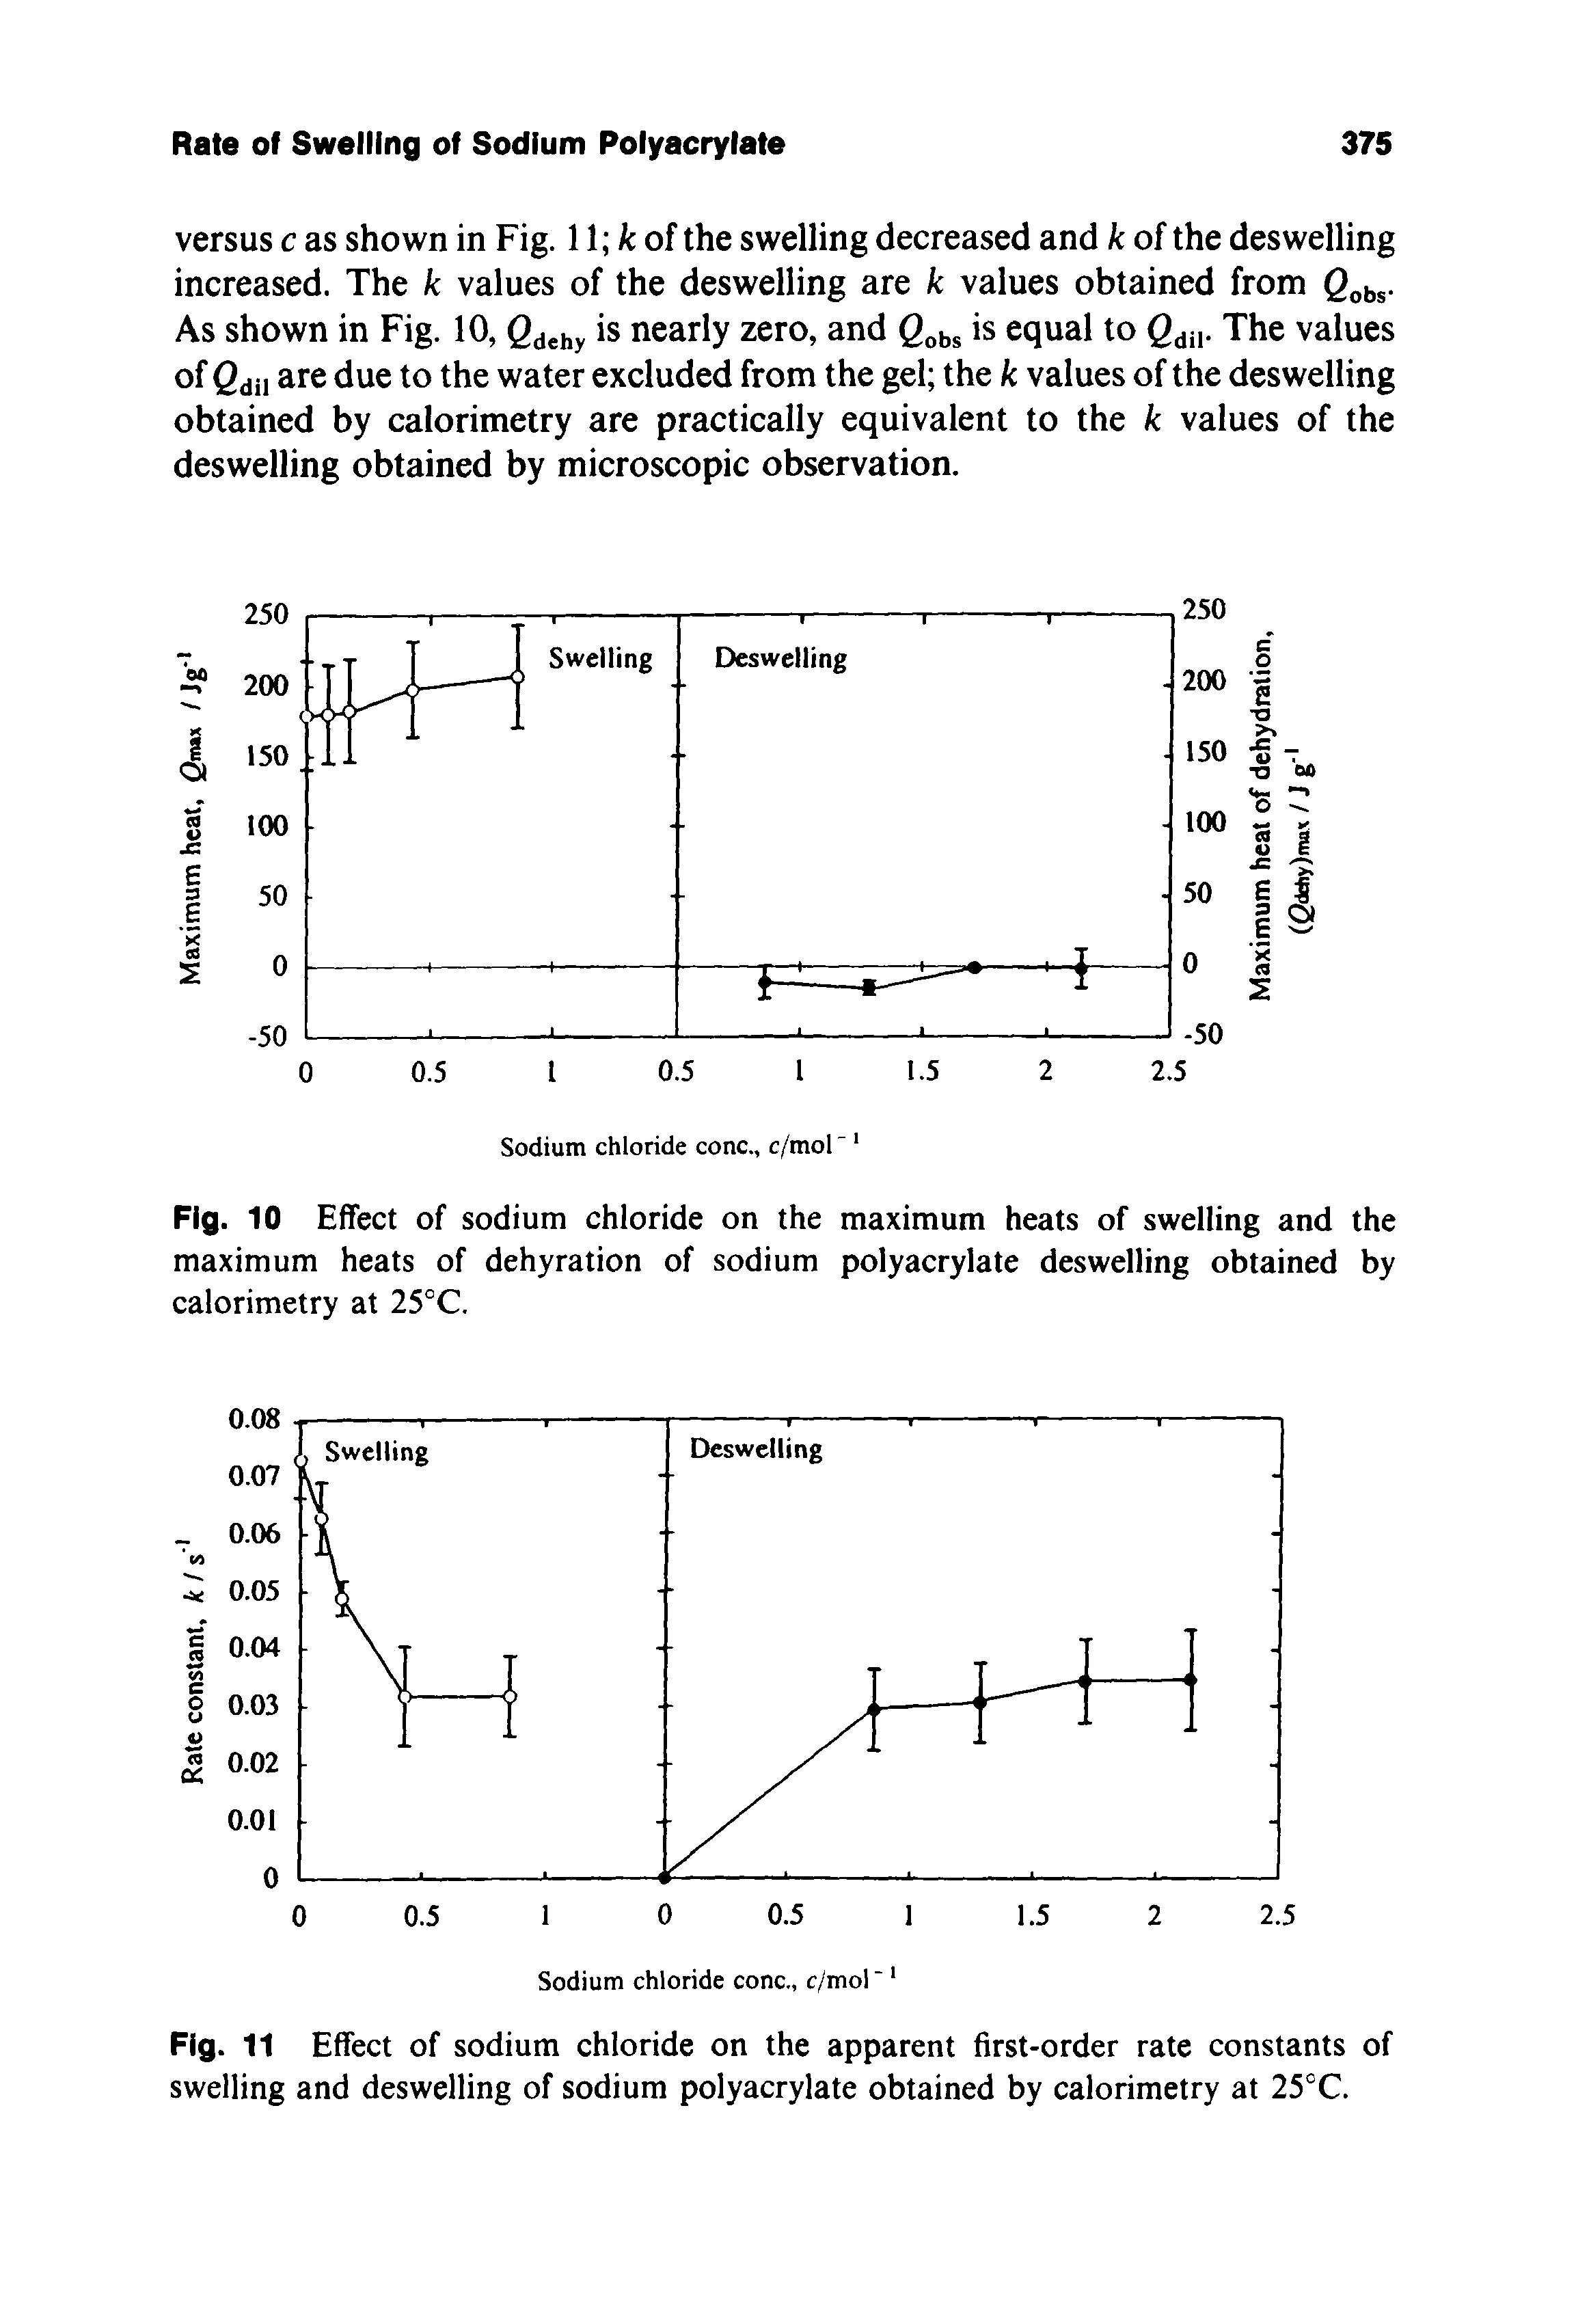 Fig. 10 Effect of sodium chloride on the maximum heats of swelling and the maximum heats of dehyration of sodium polyacrylate deswelling obtained by calorimetry at 25°C.